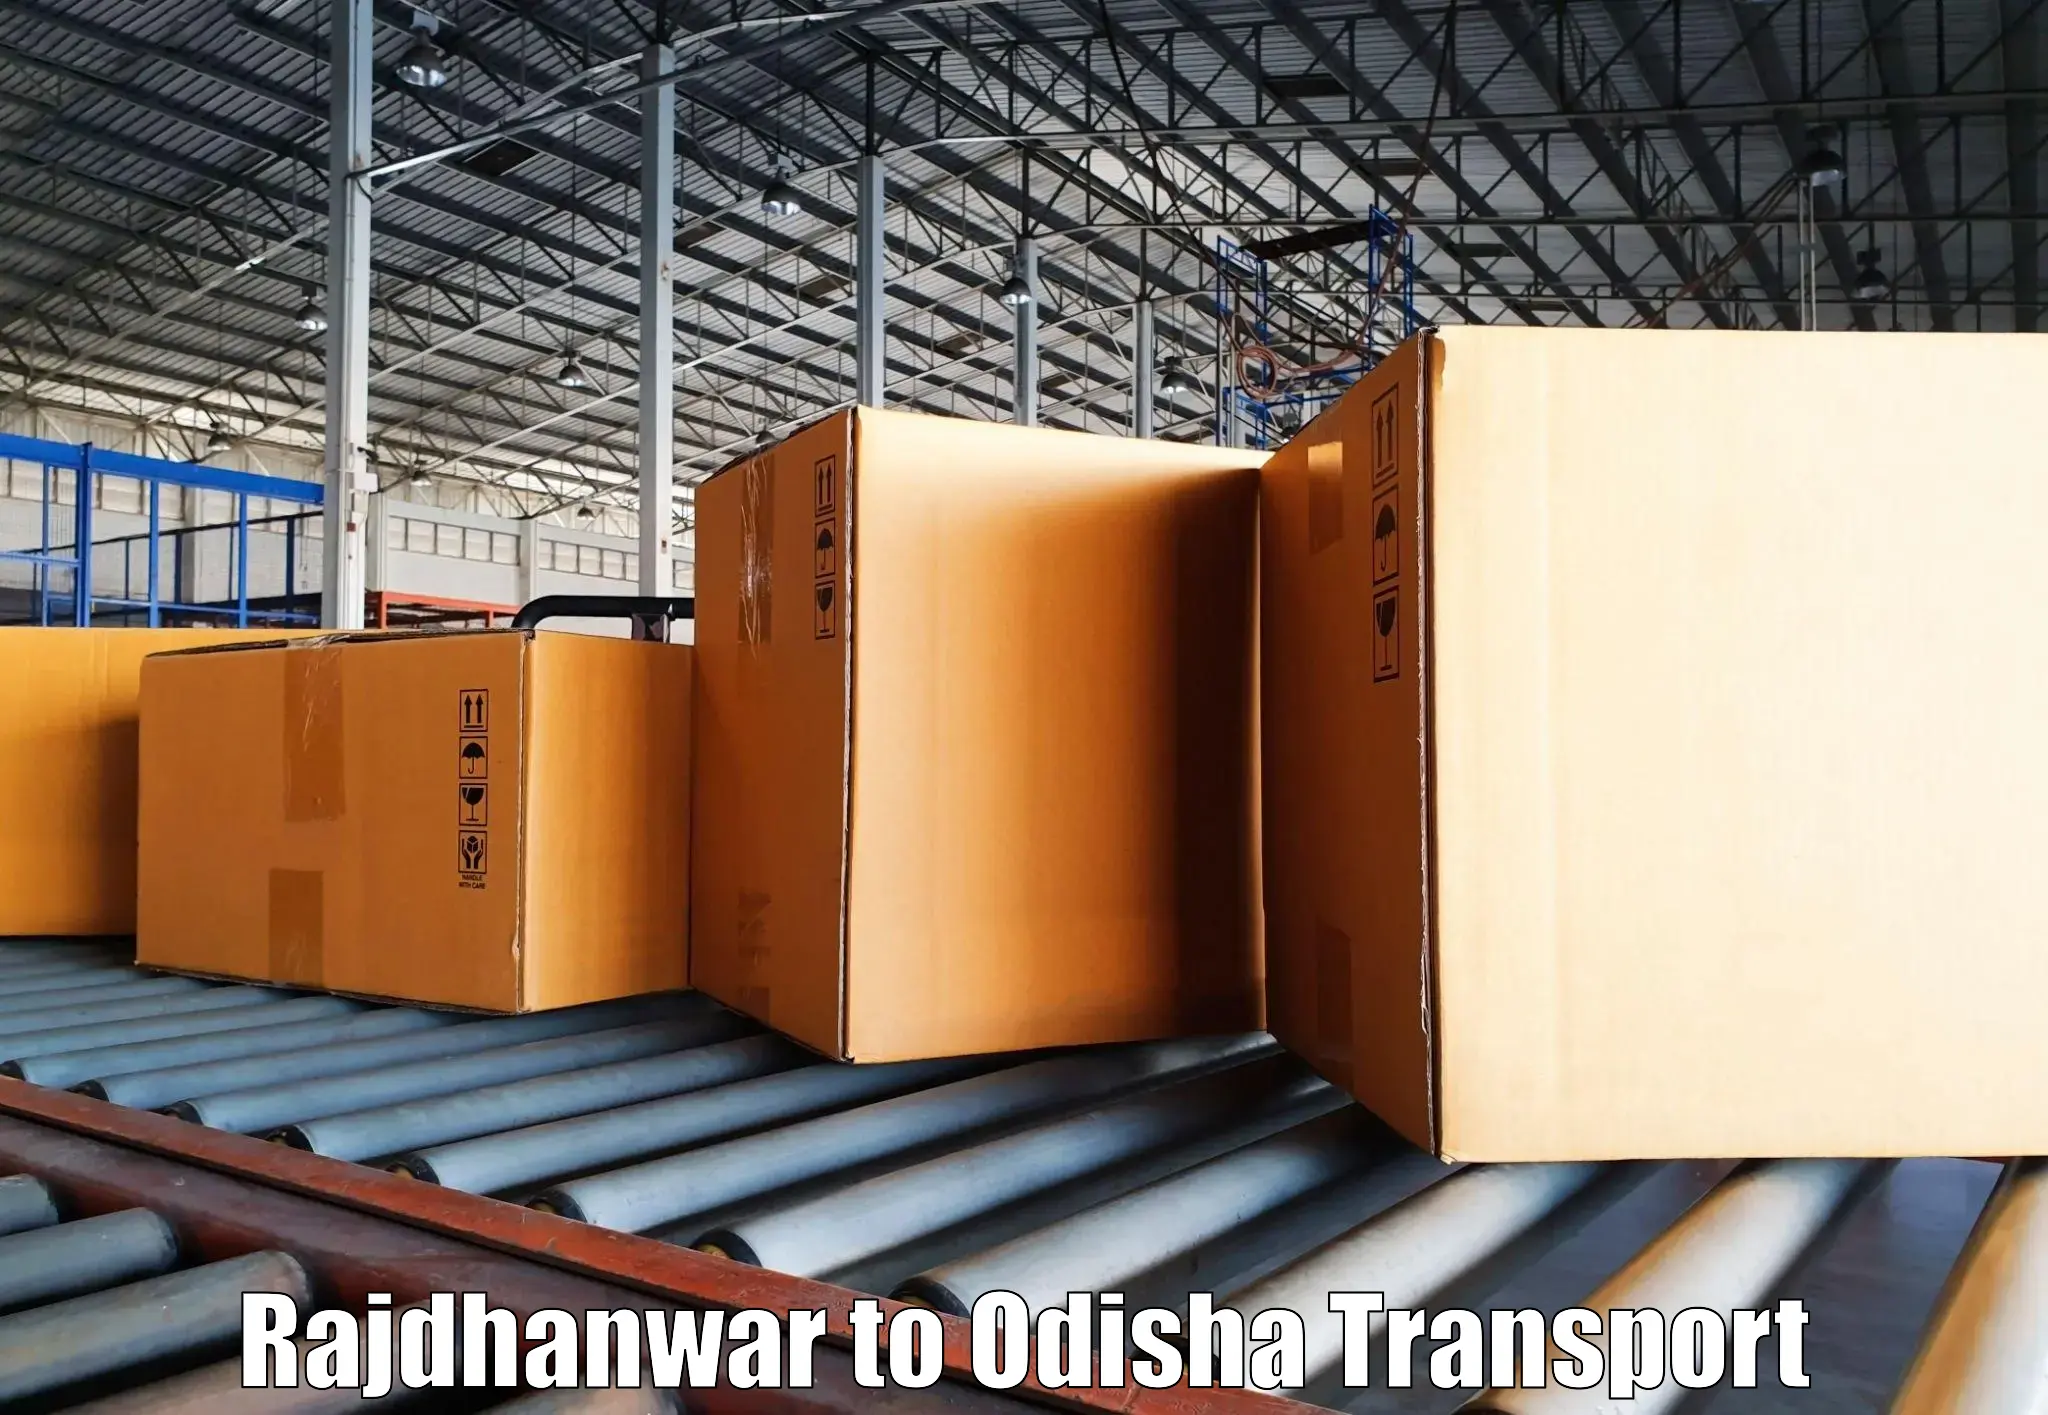 Furniture transport service Rajdhanwar to Khariar